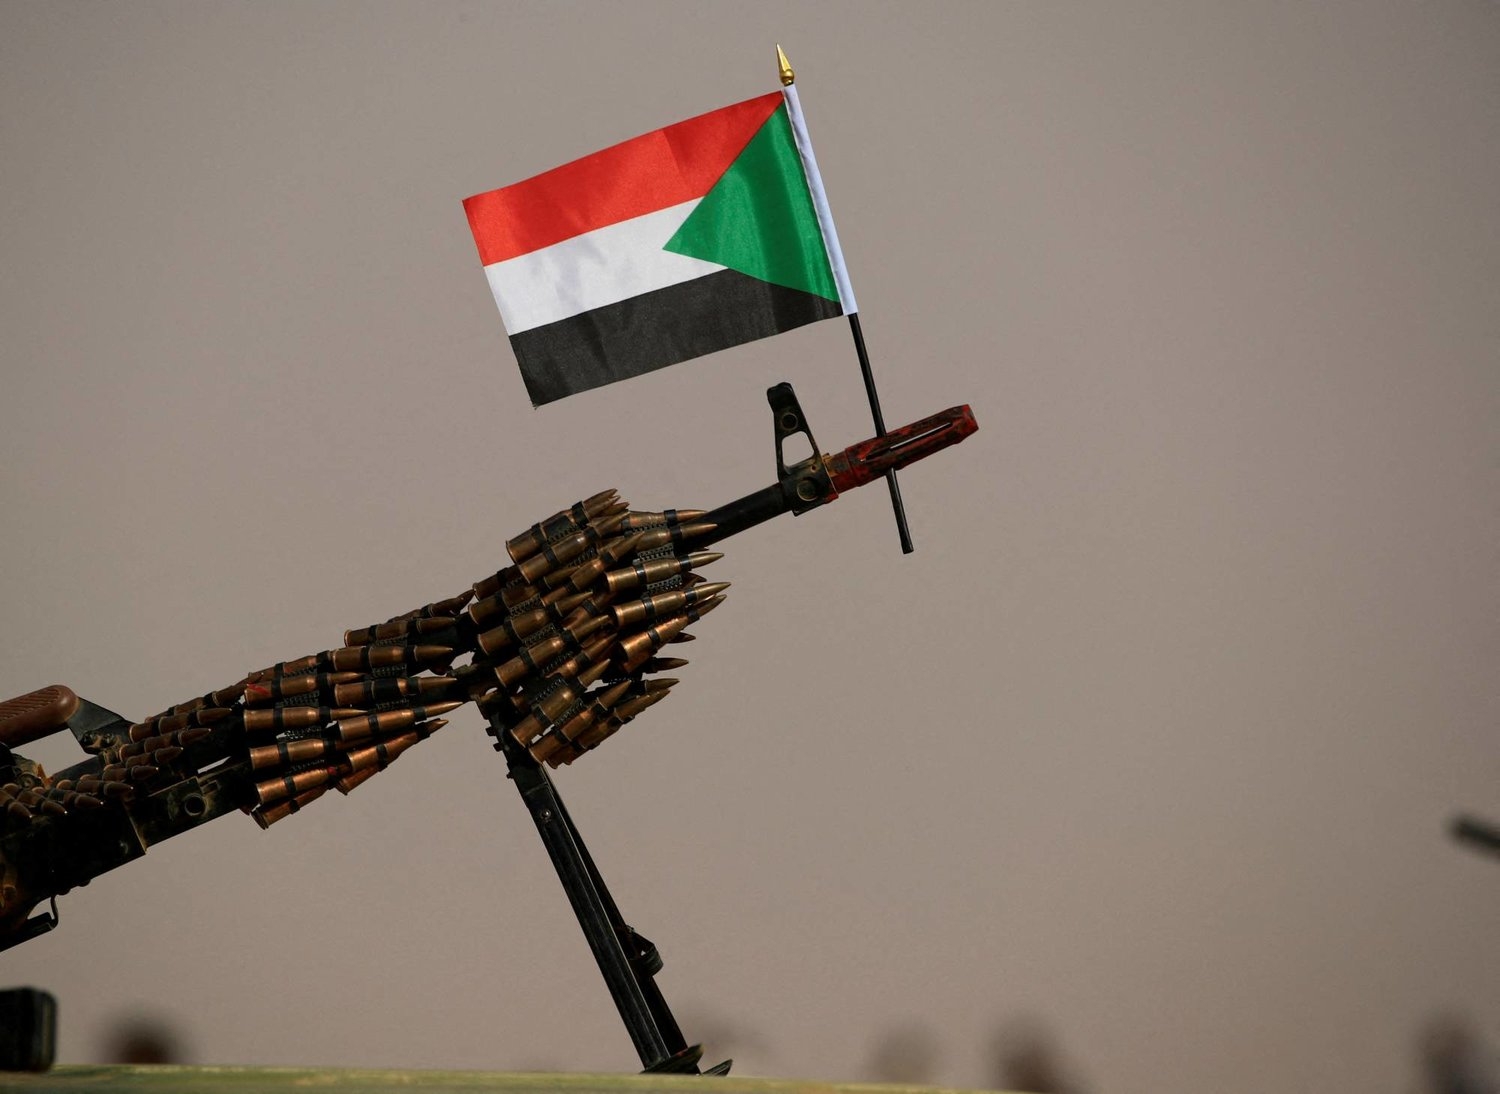 السودان: غارات للجيش على مواقع لـ«الدعم السريع» بالخرطوم